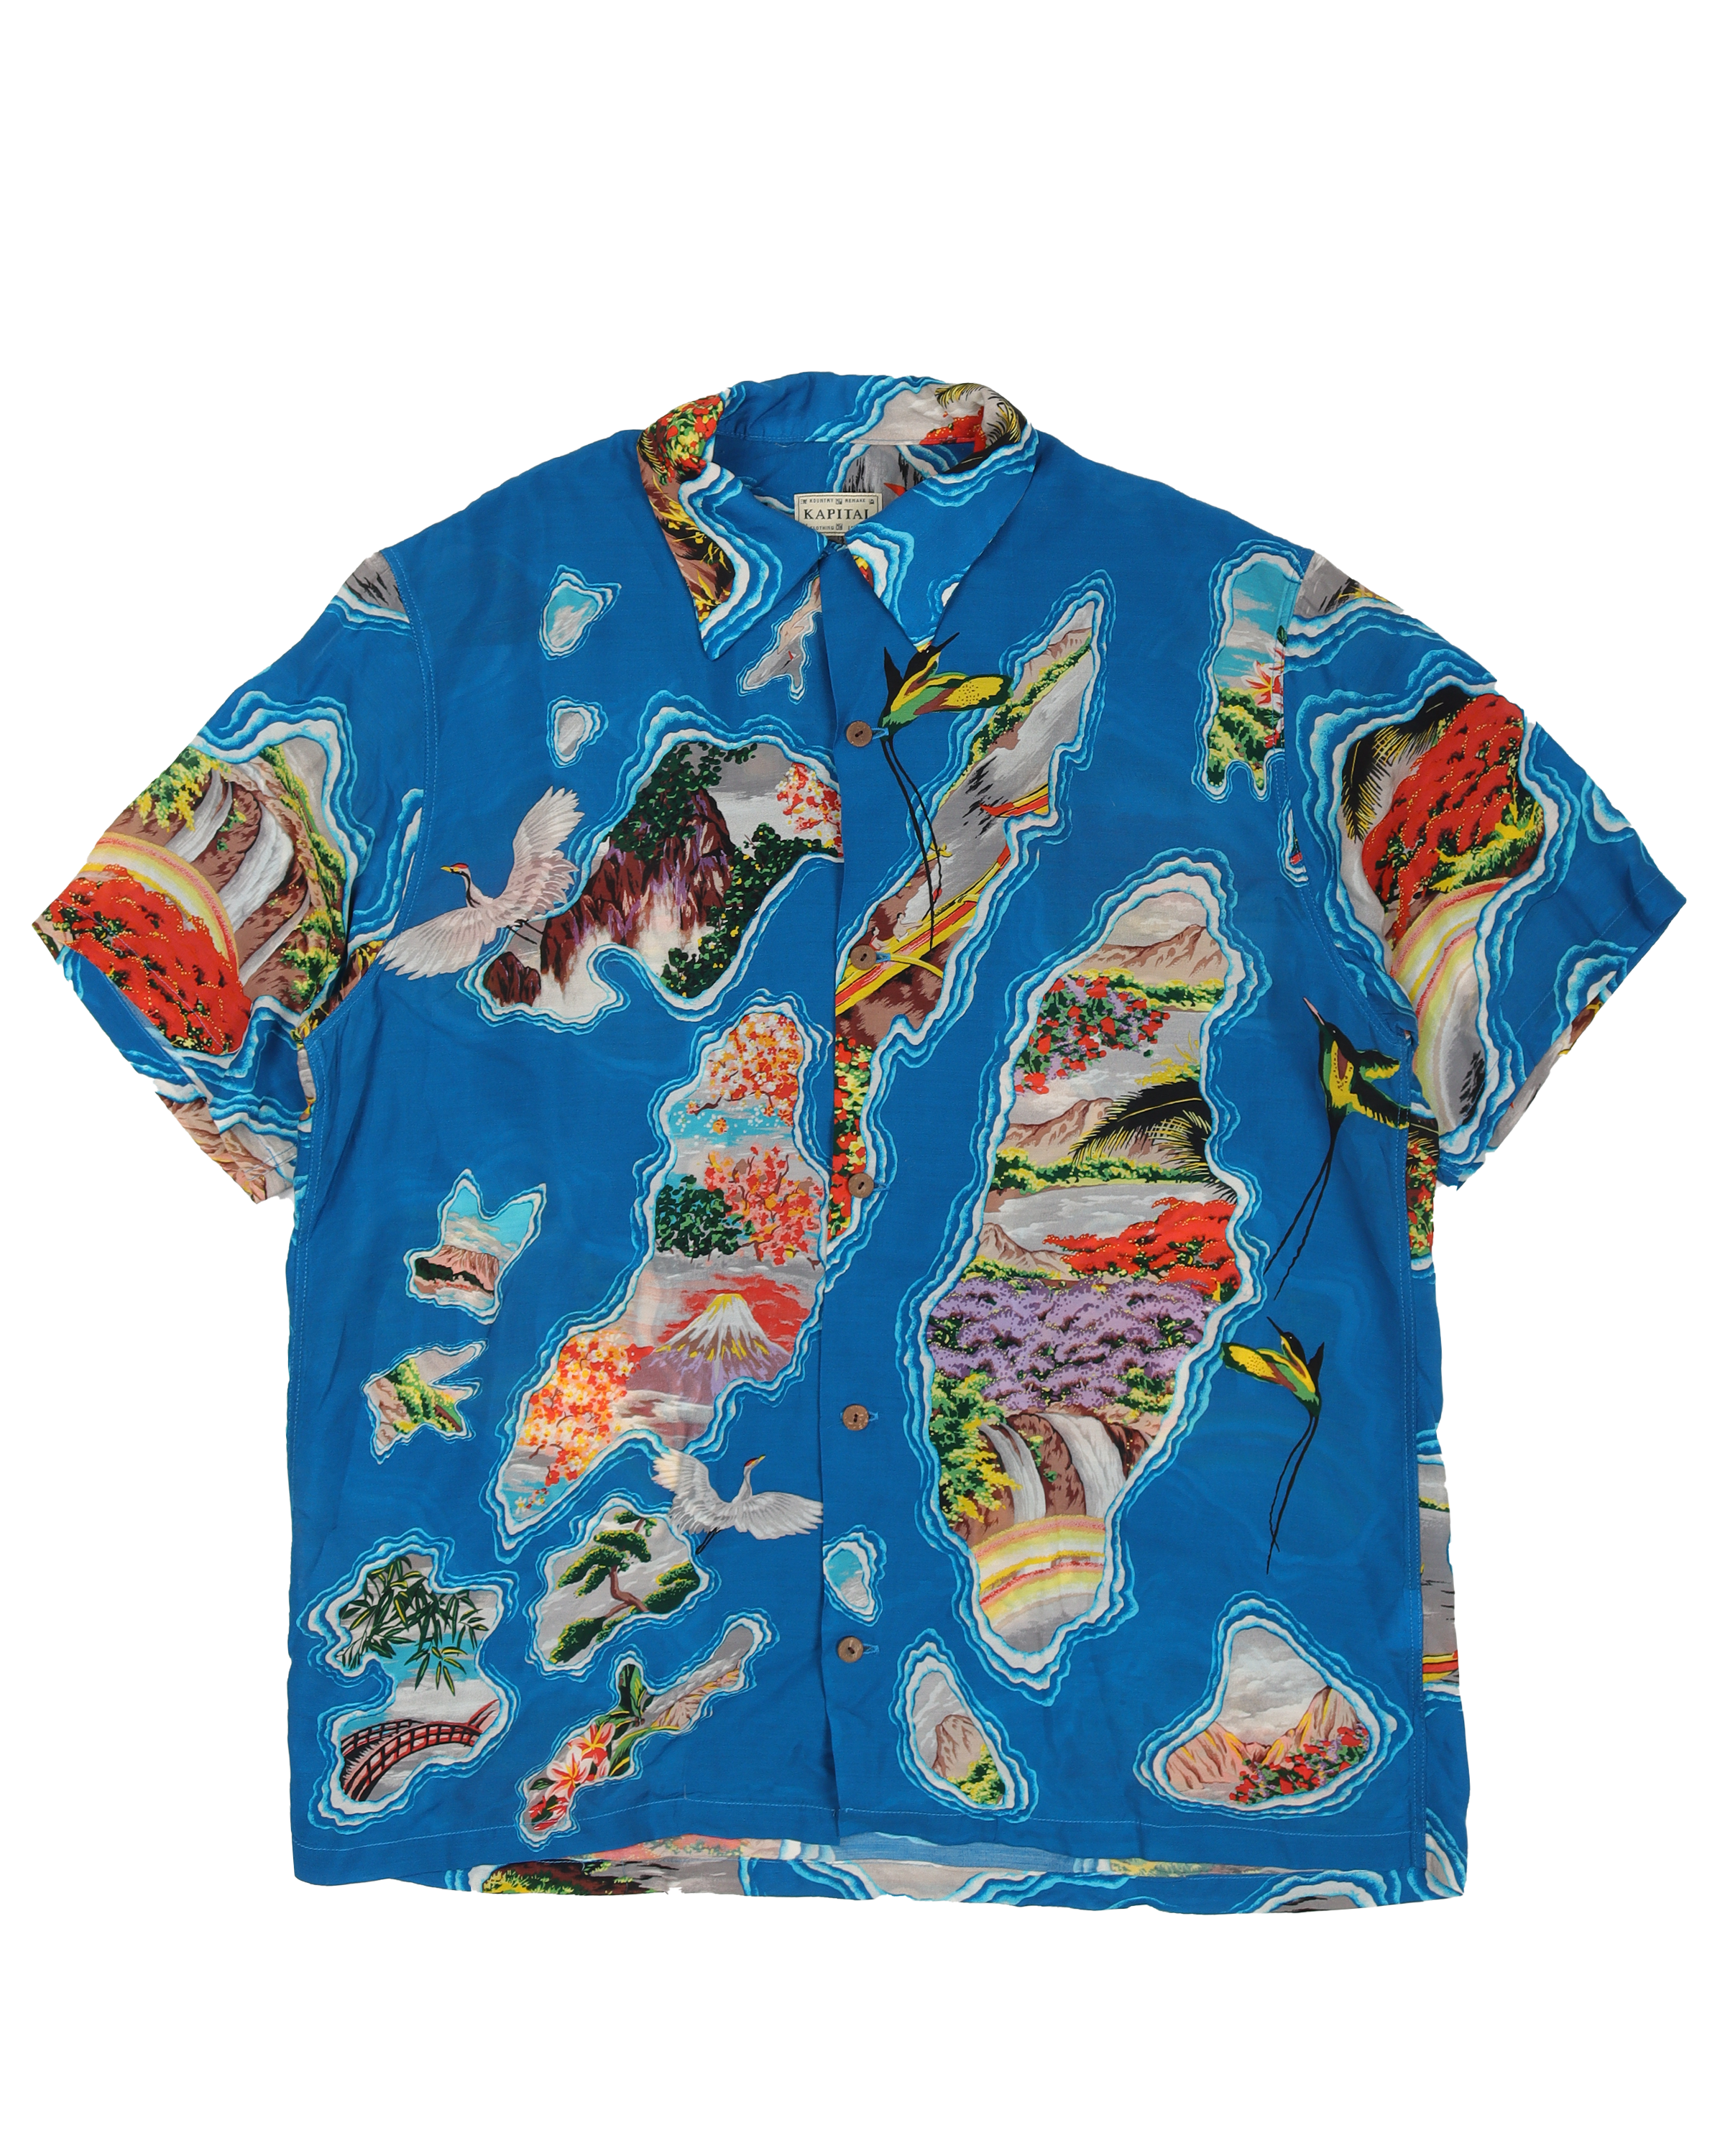 Pacific-Atlantic Aloha Shirt